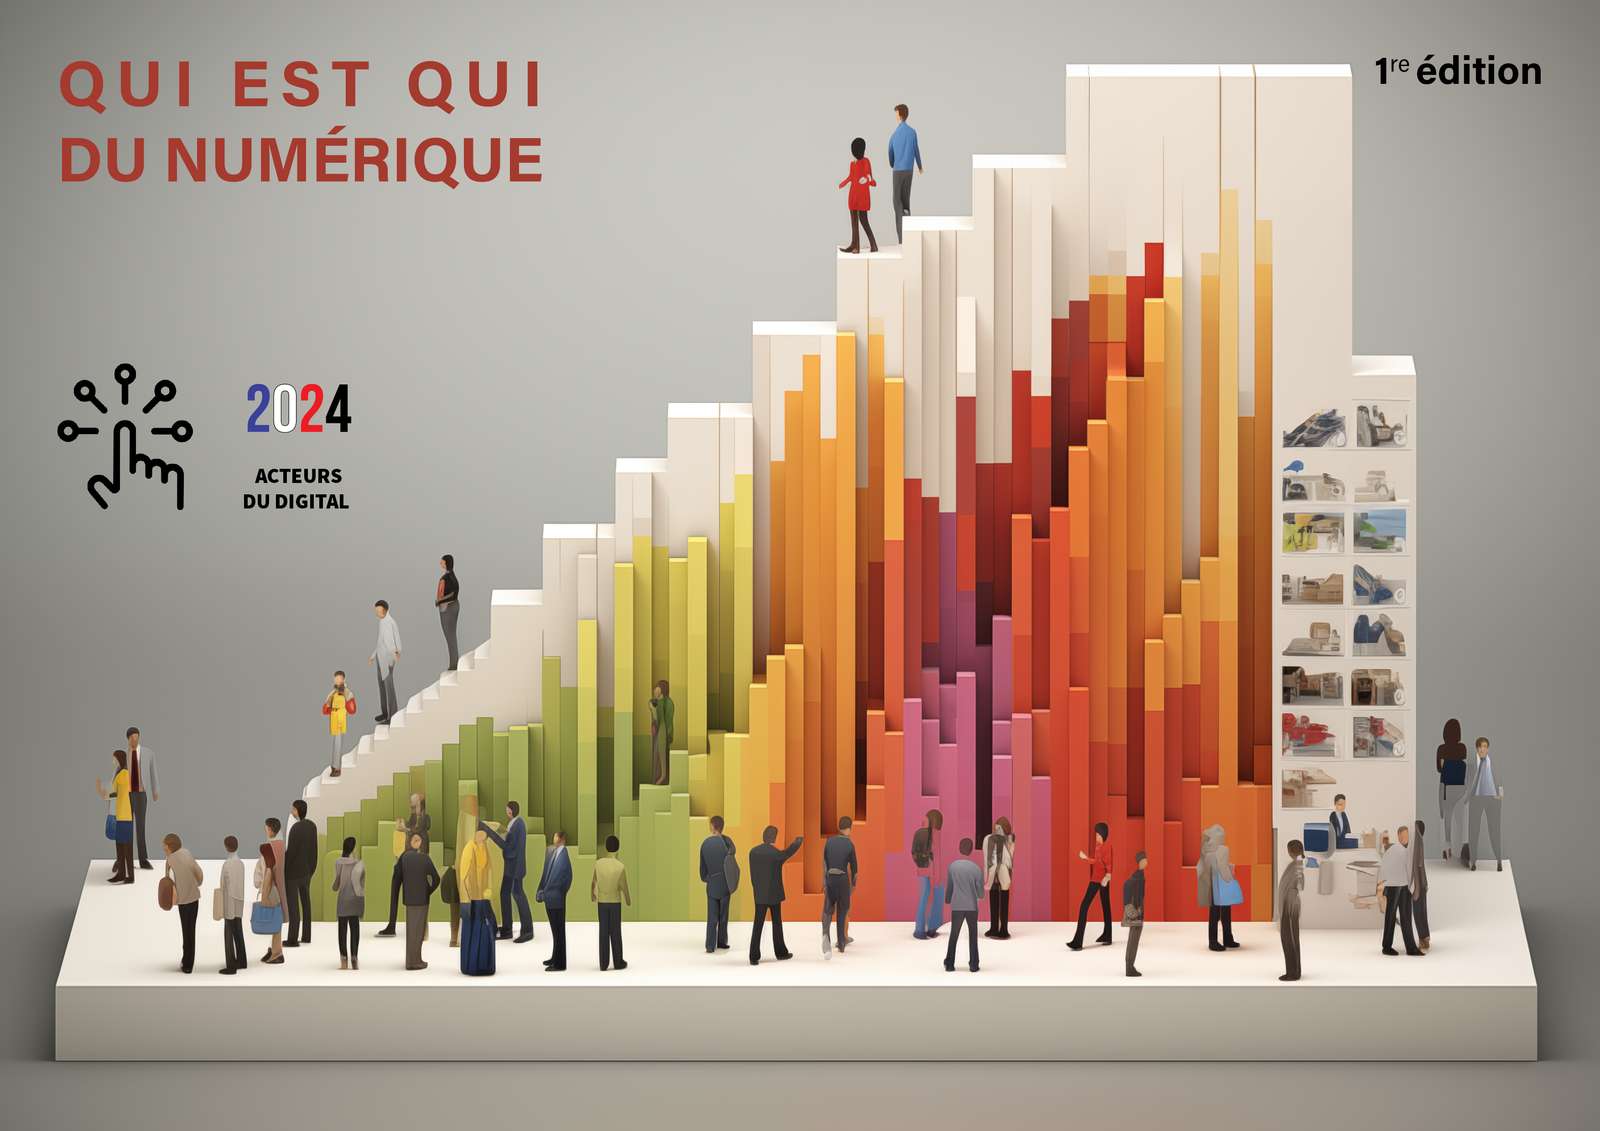 Le Qui est Qui du numérique 2024 puzzle online from photo